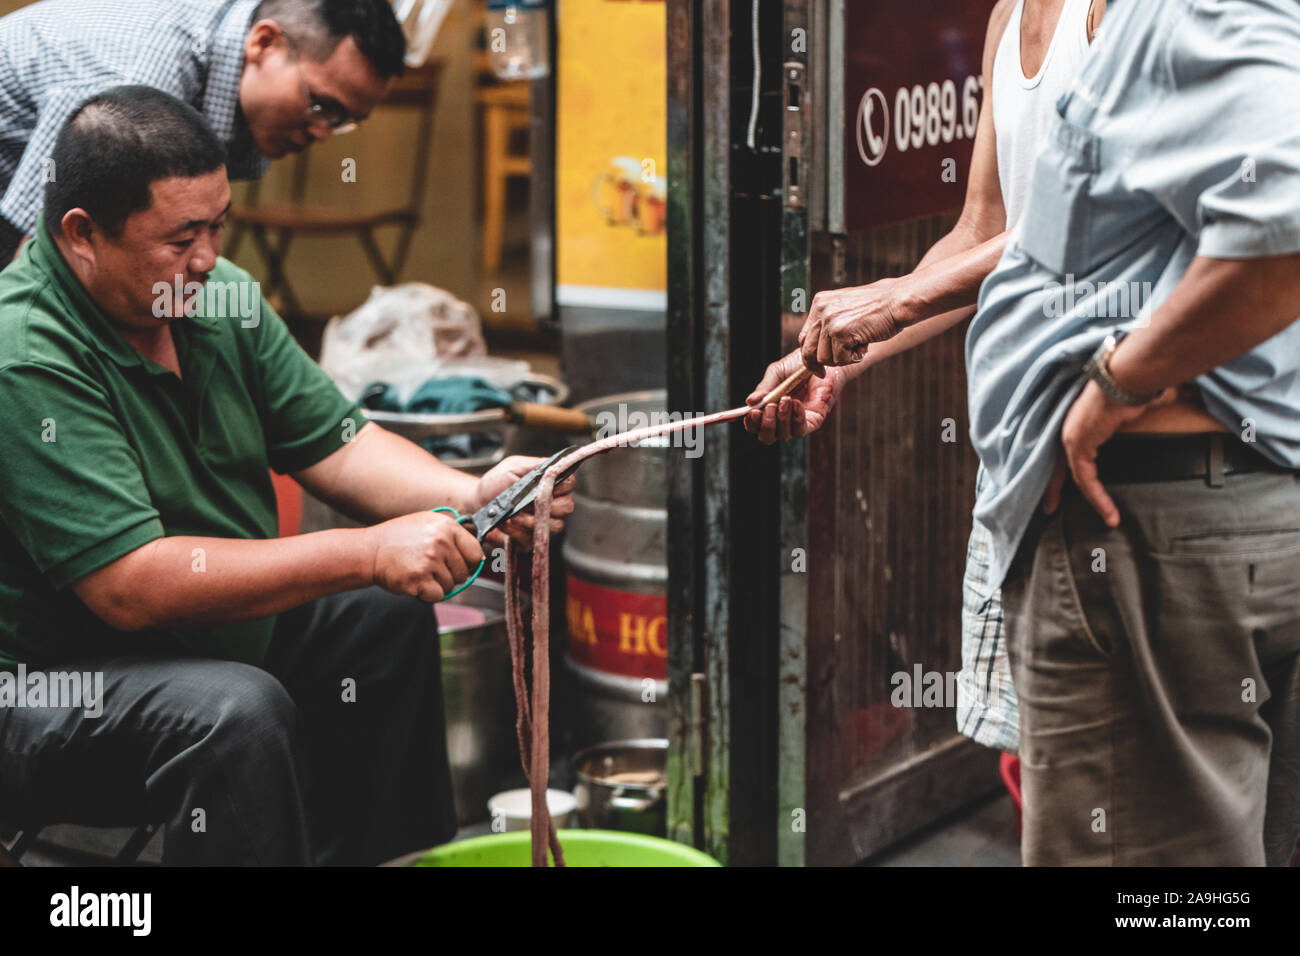 Hanoi, Vietnam - 18 Ottobre 2019: due uomini asiatici in un vicolo tagliata aperta nell'intestino o un'anguilla a prepararlo per un mercato o un cibo di strada Foto Stock